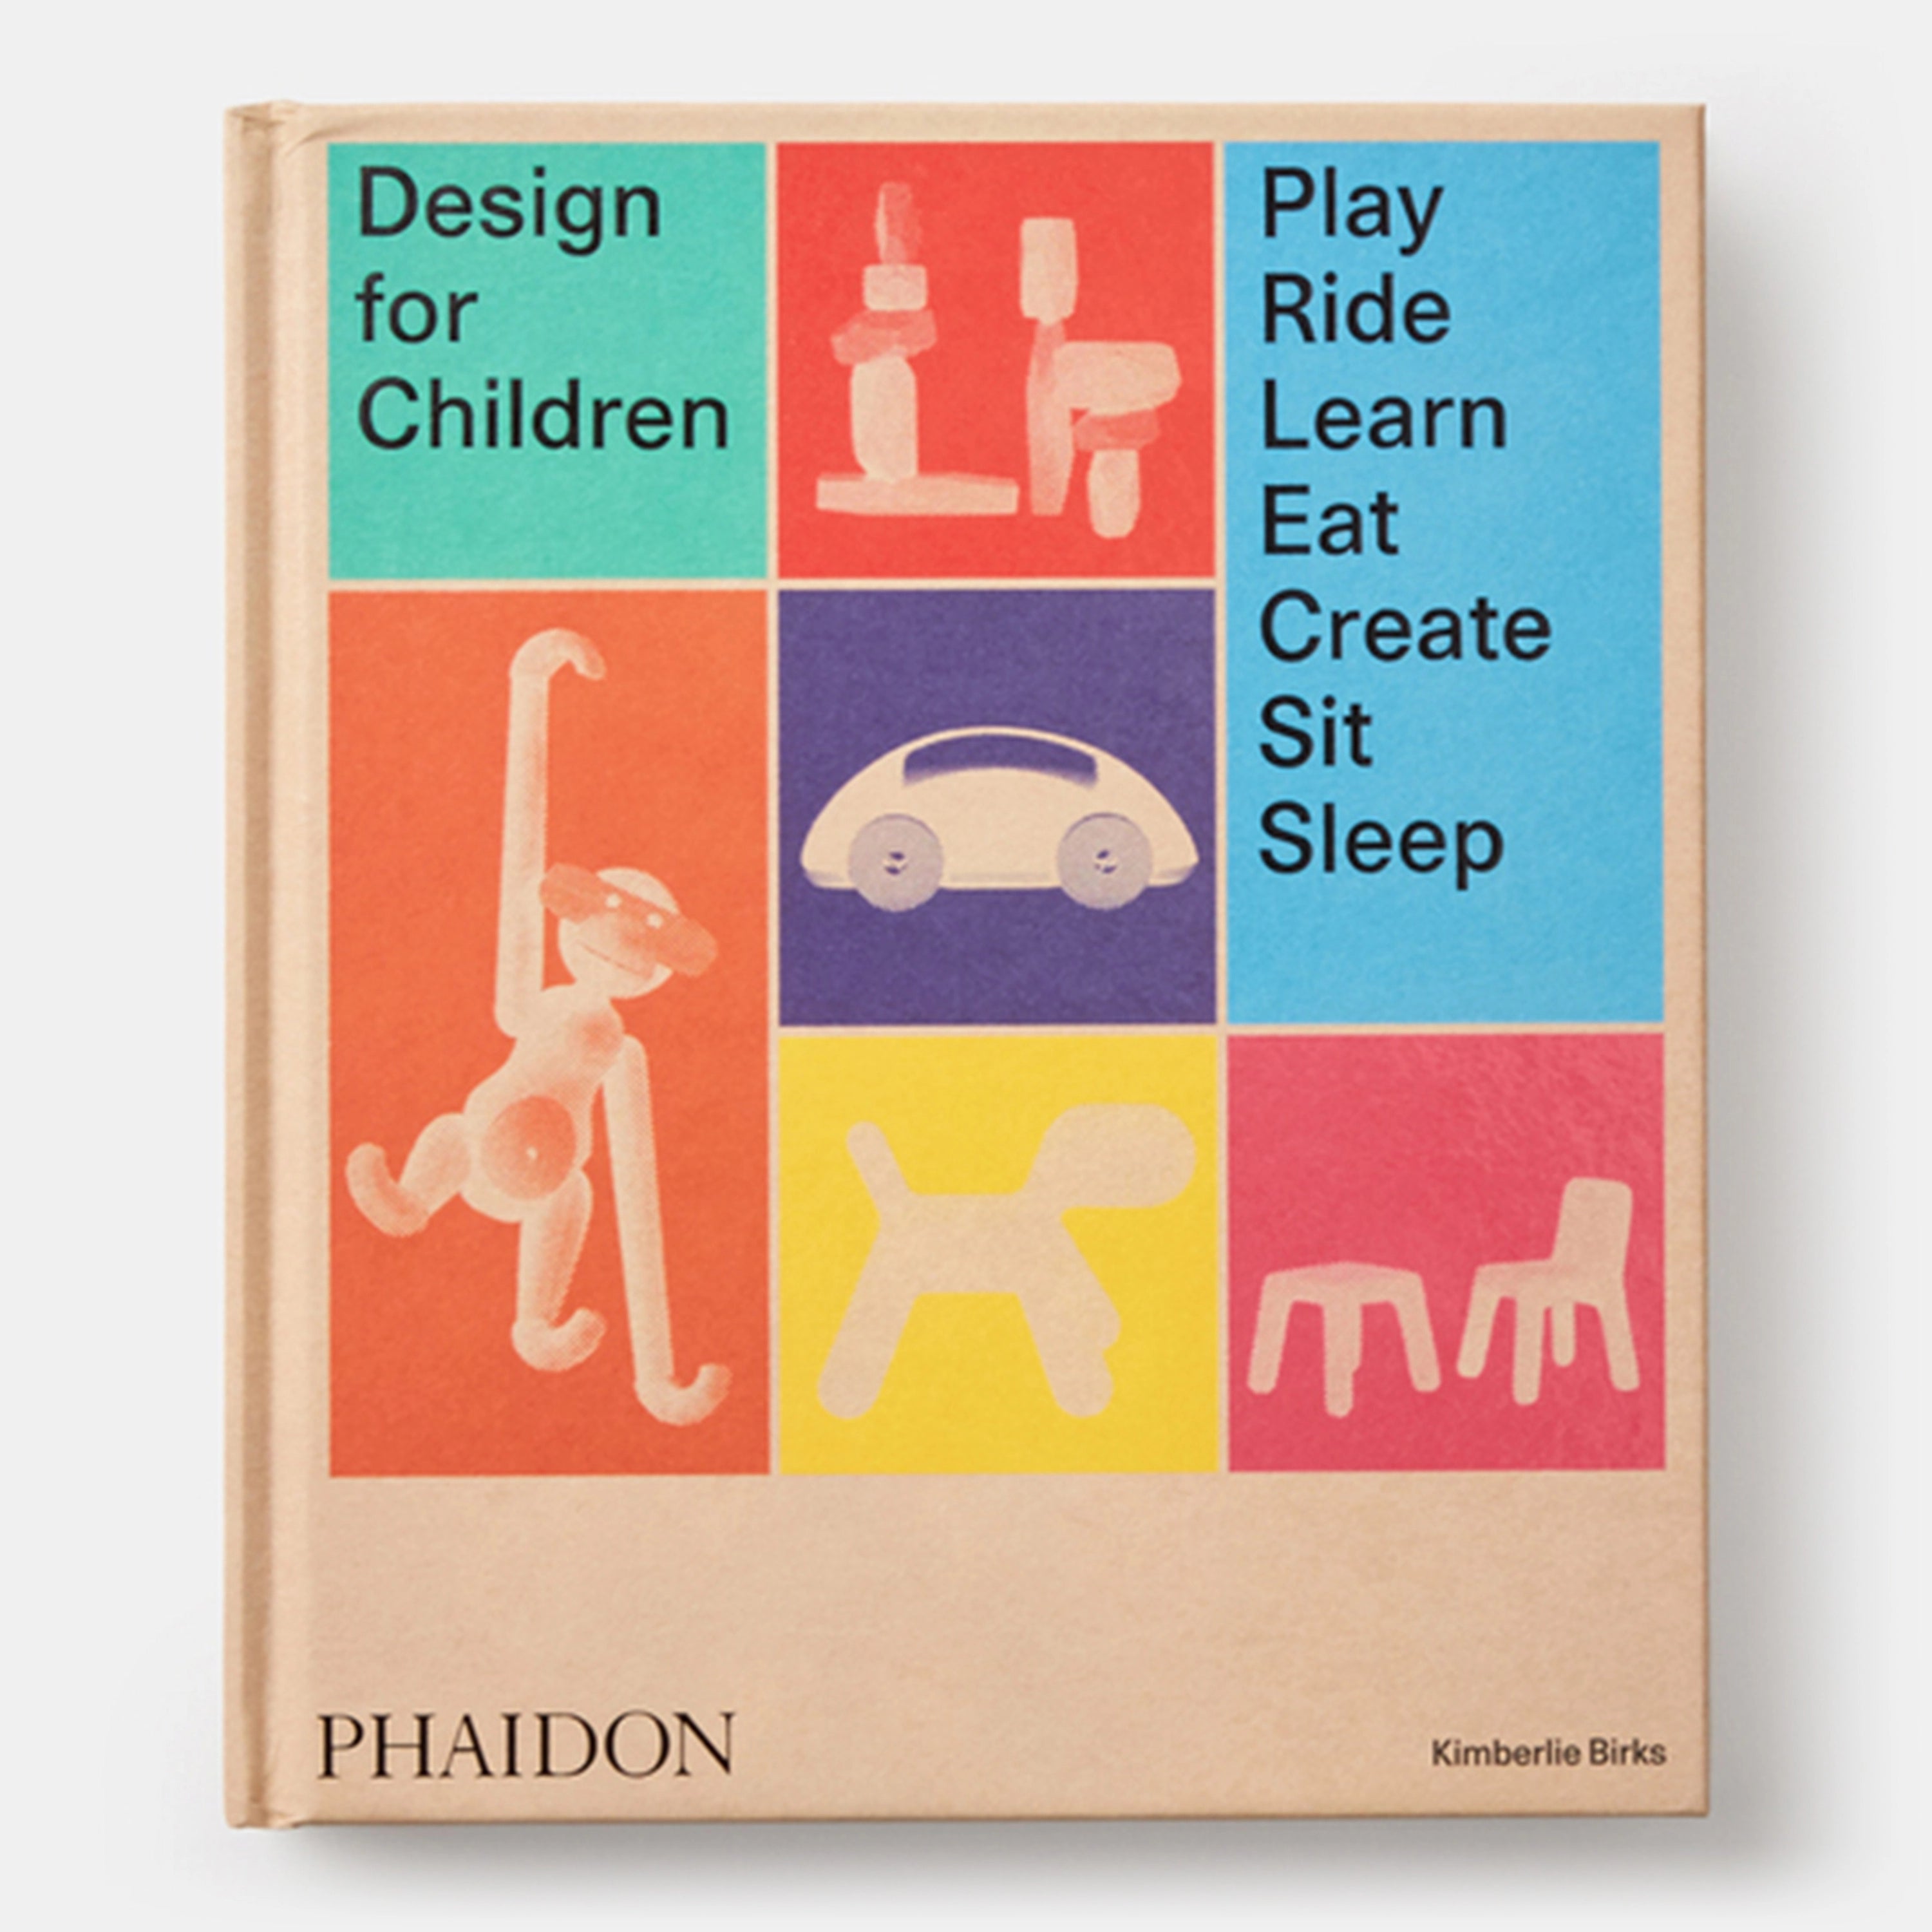 Design for Children